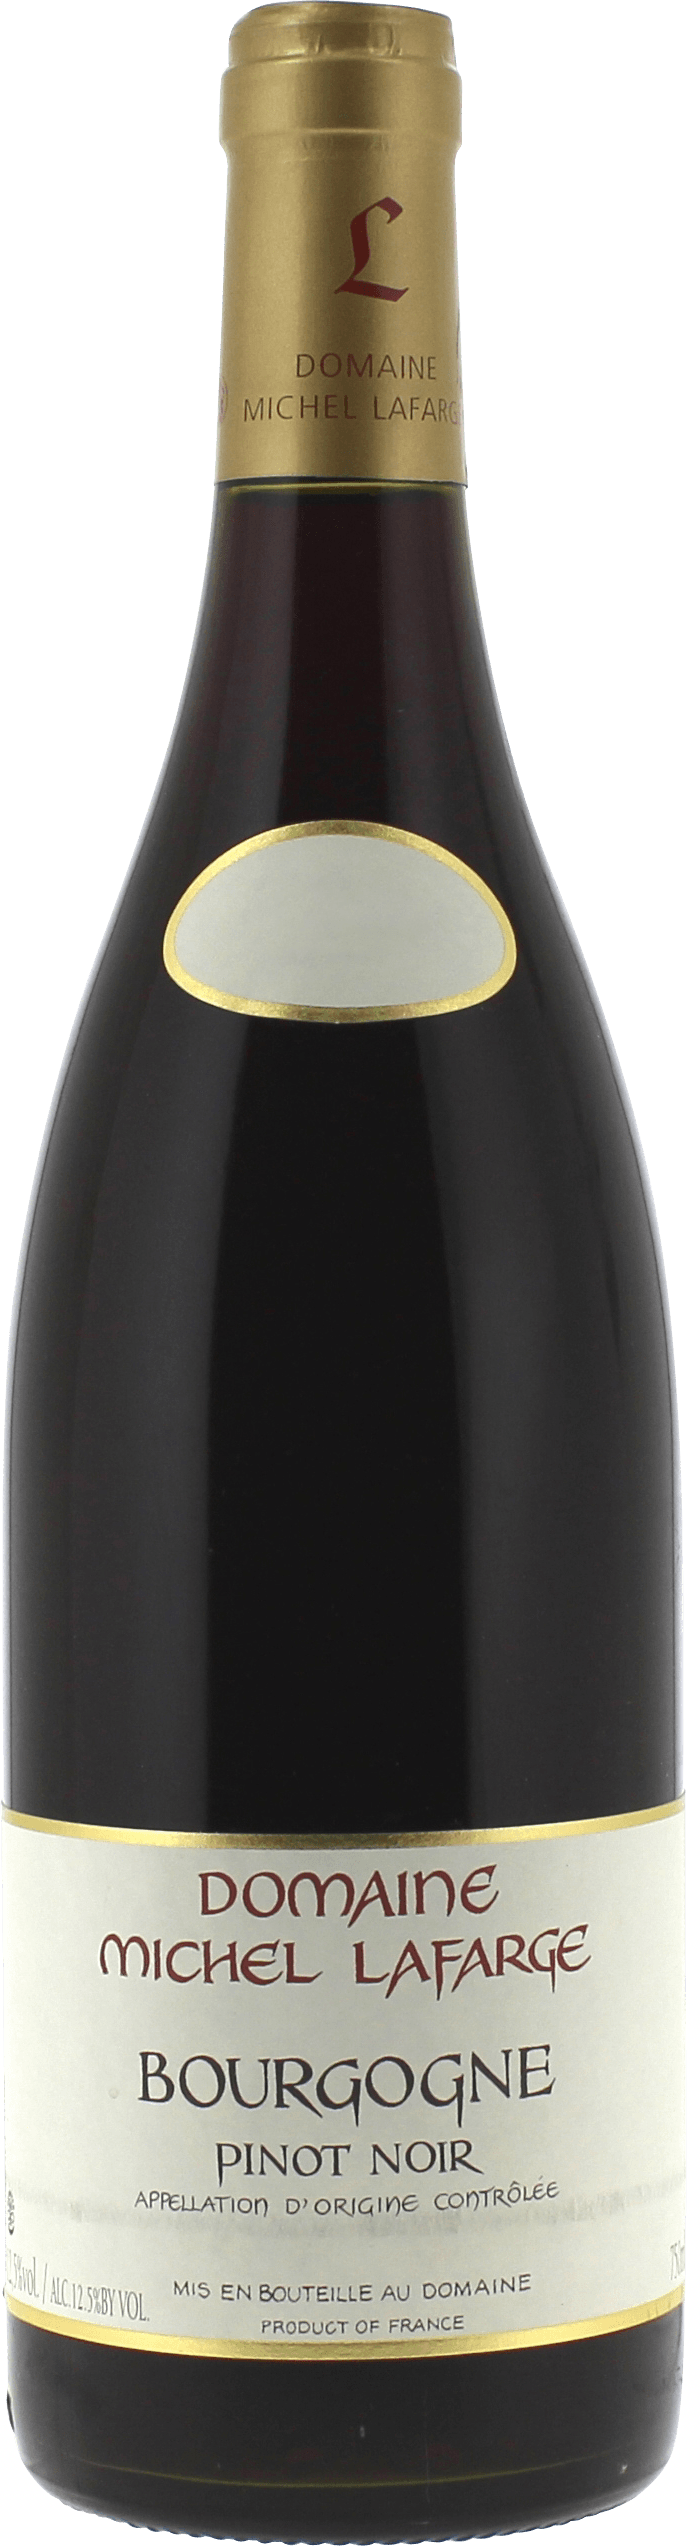 Bourgogne pinot noir 2016  LAFARGE, Bourgogne rouge